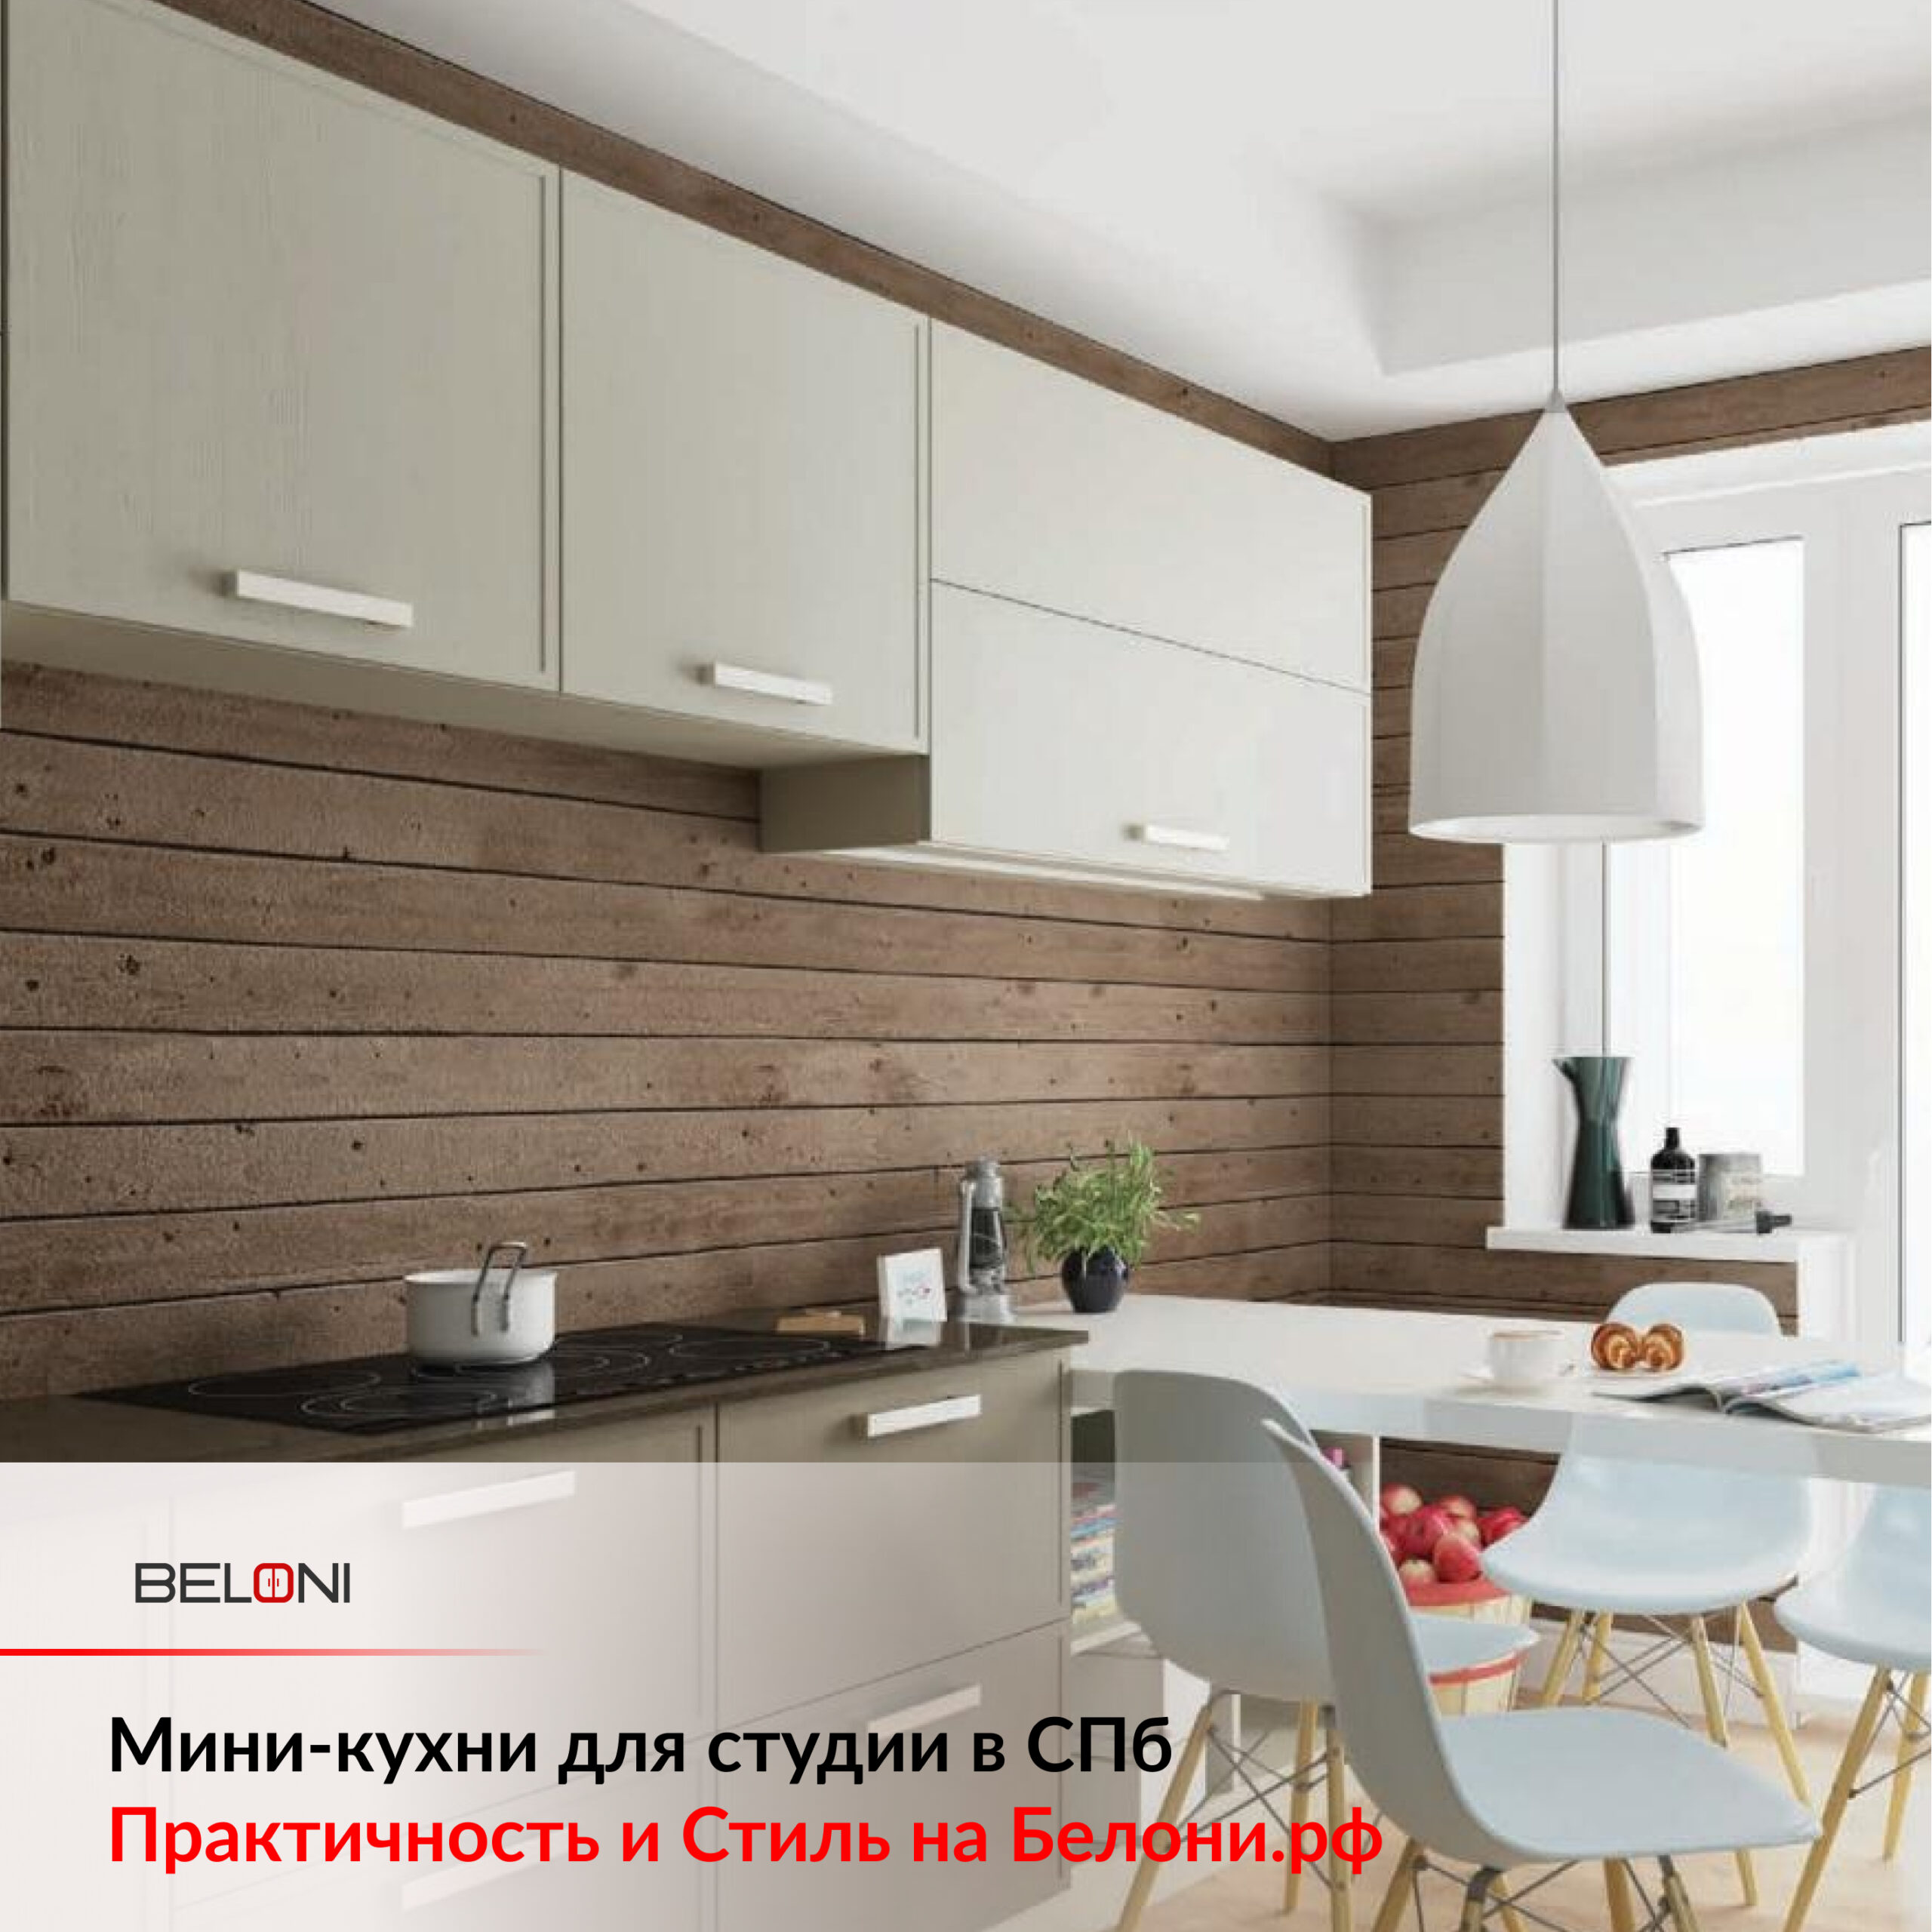 Мини-кухни для студии в СПб: Практичность и Стиль на Белони.рф